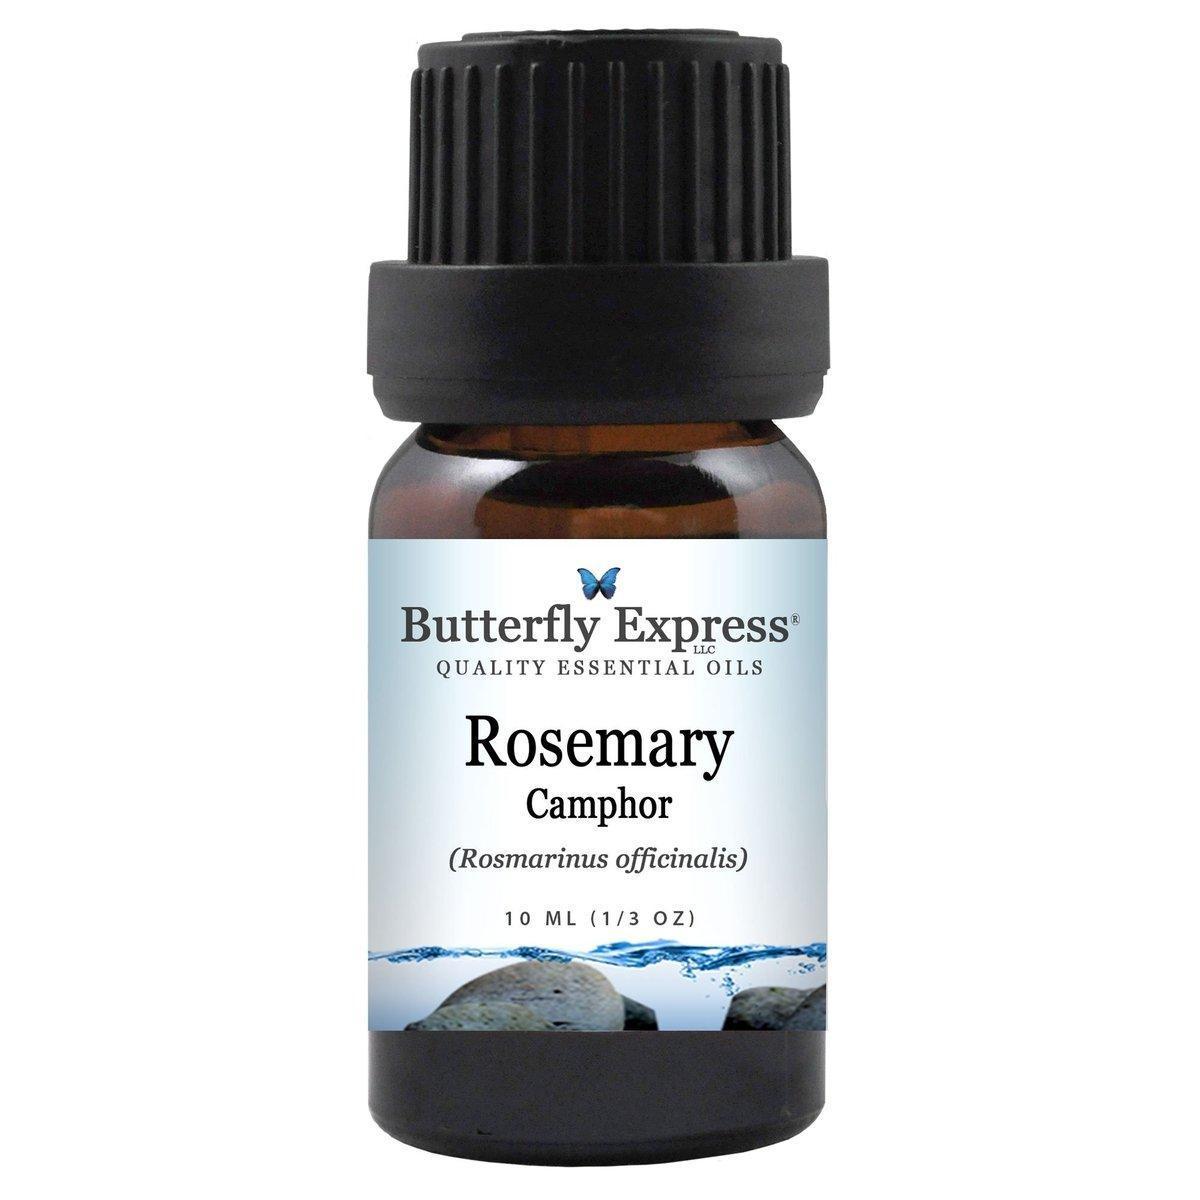 Rosemary Camphor essential oils